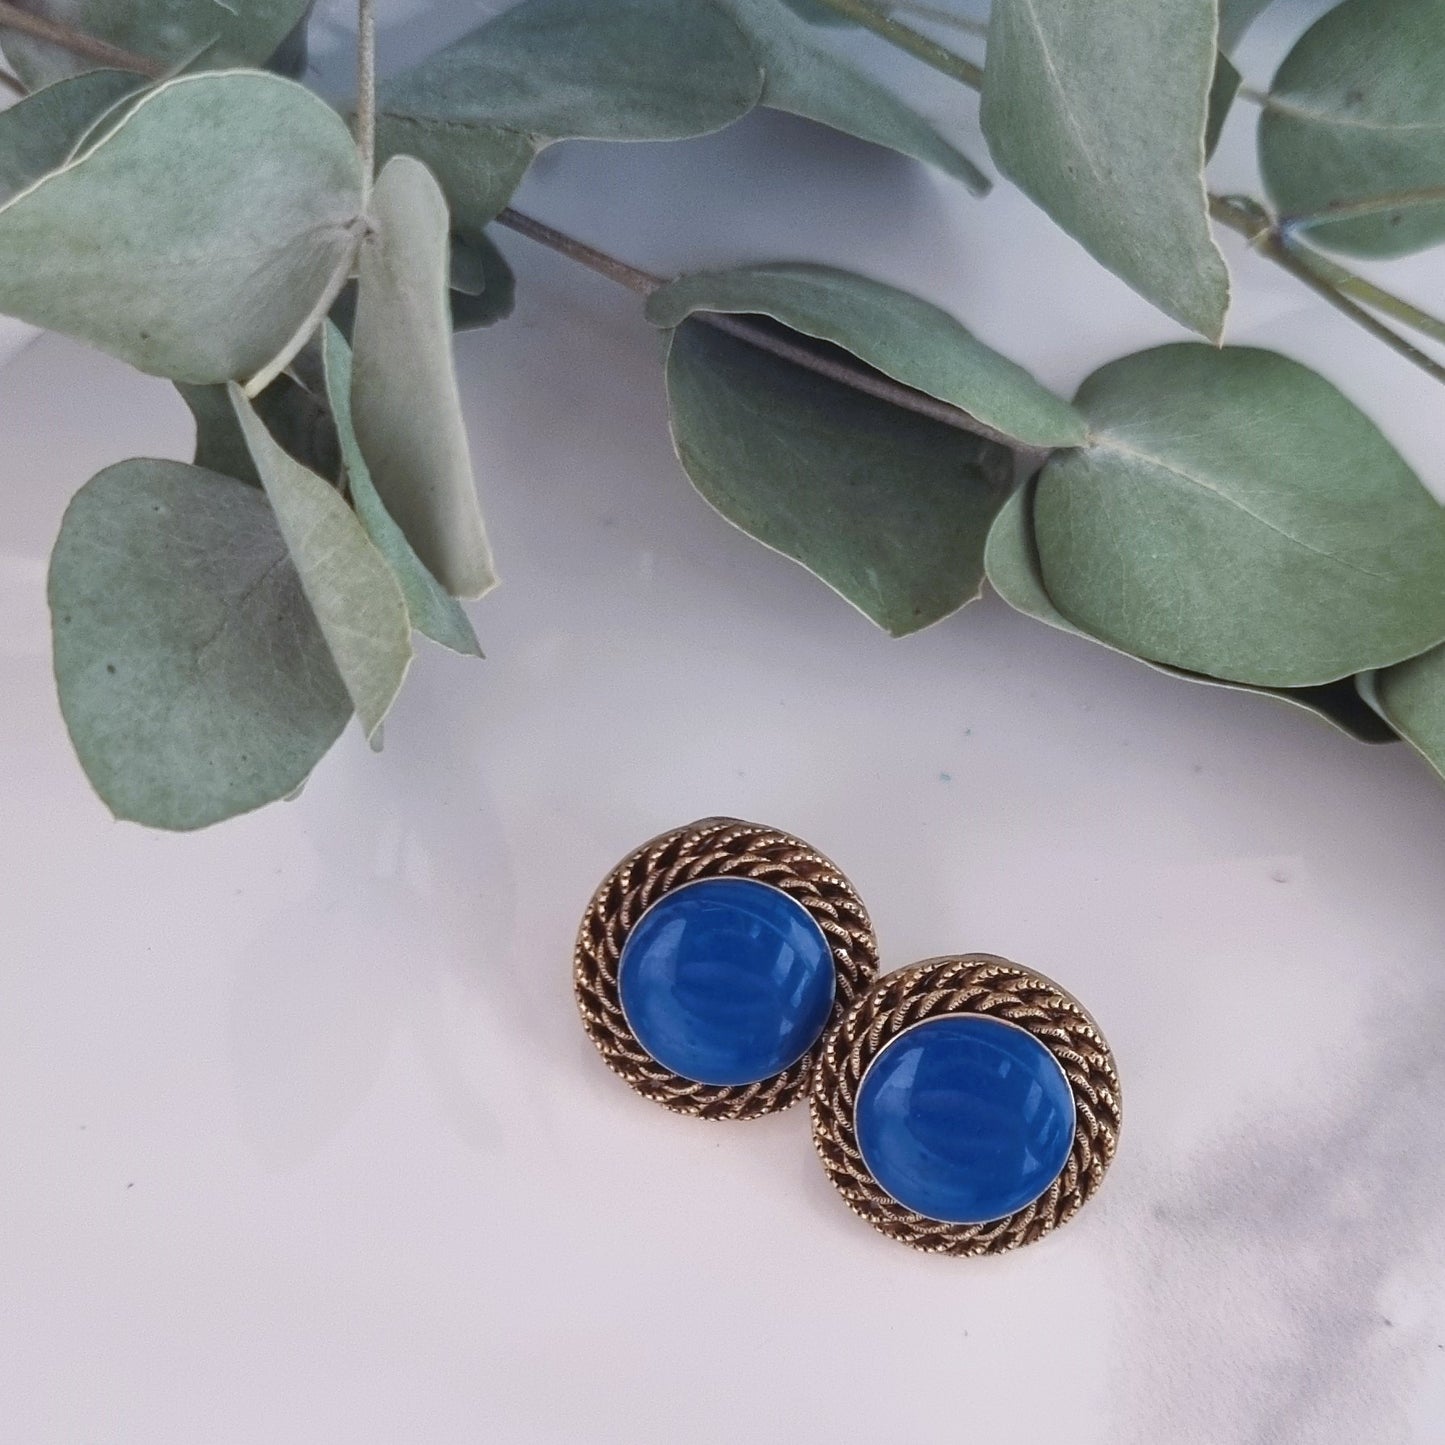 Vintage earrings - Blue